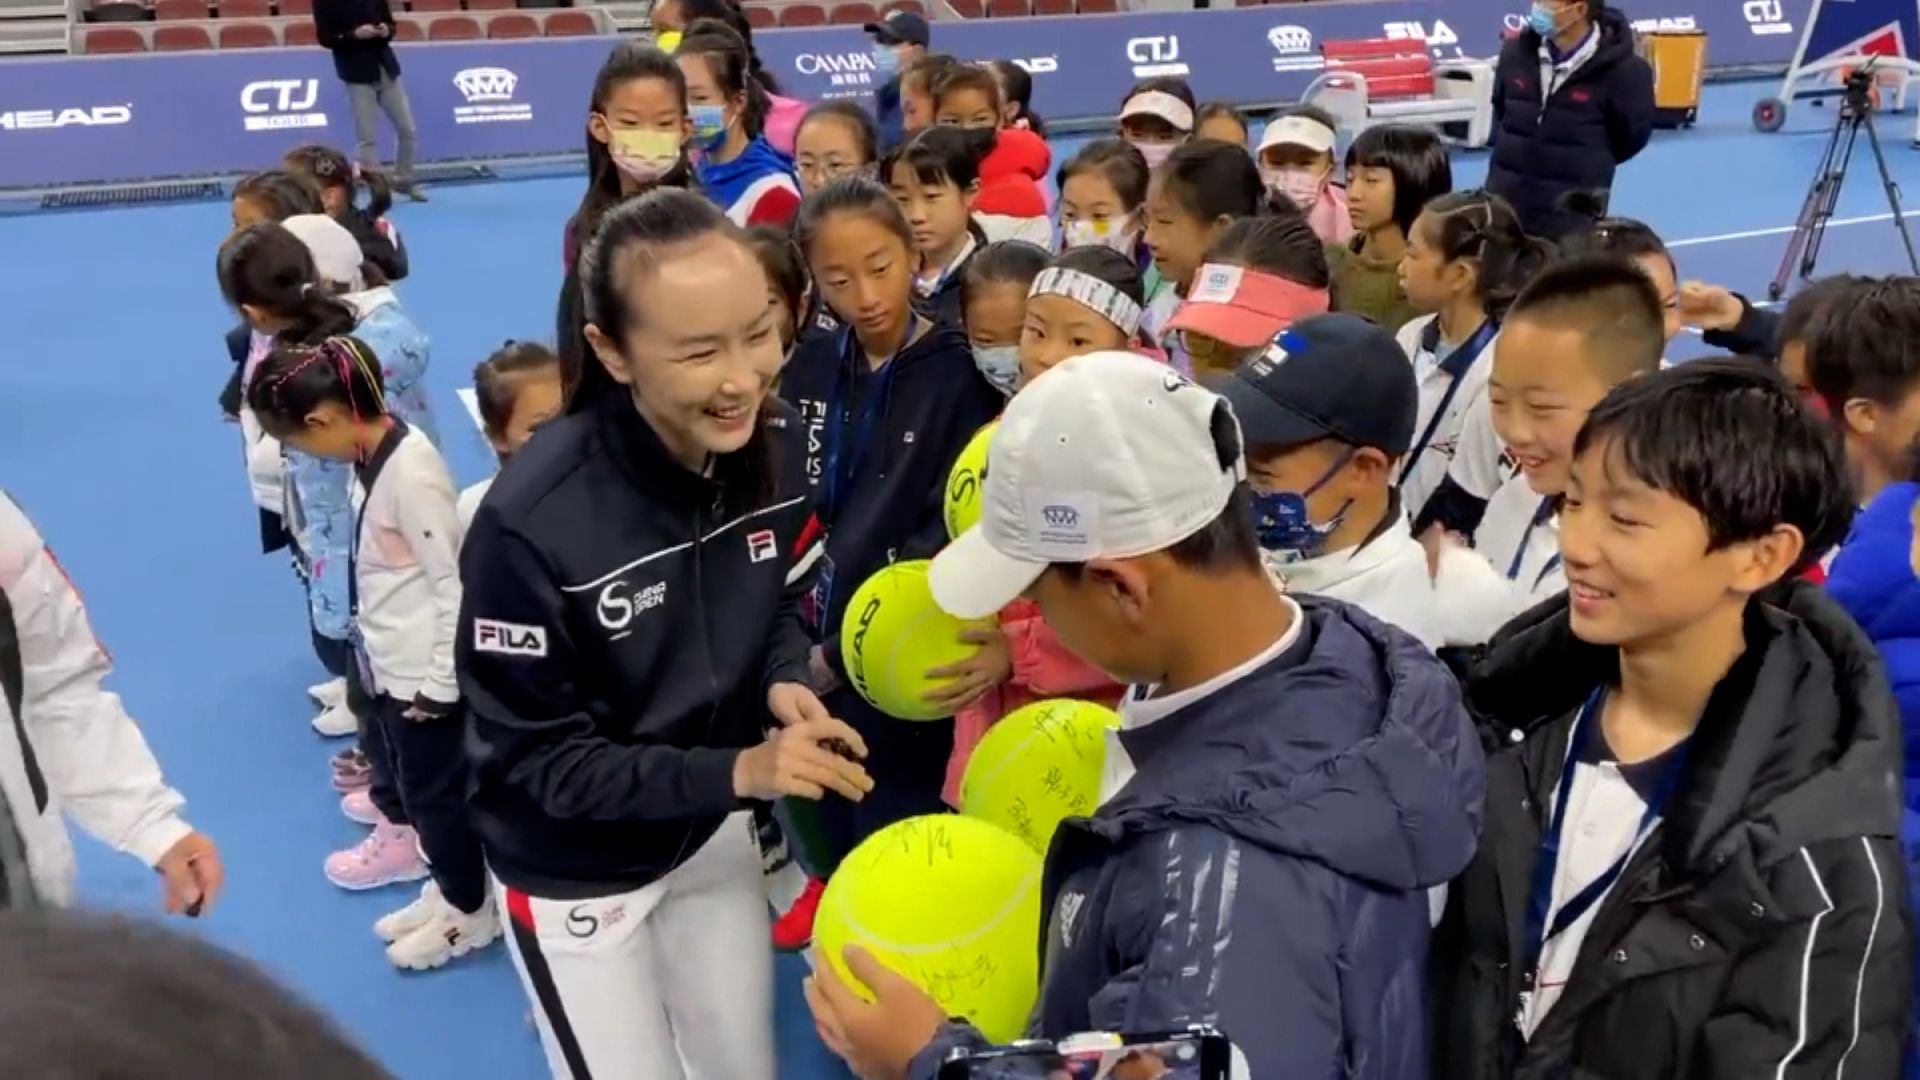 Caso Peng Shuai: diferentemente de WTA, ATP não cancela torneios de tênis  na China - Jornal O Globo